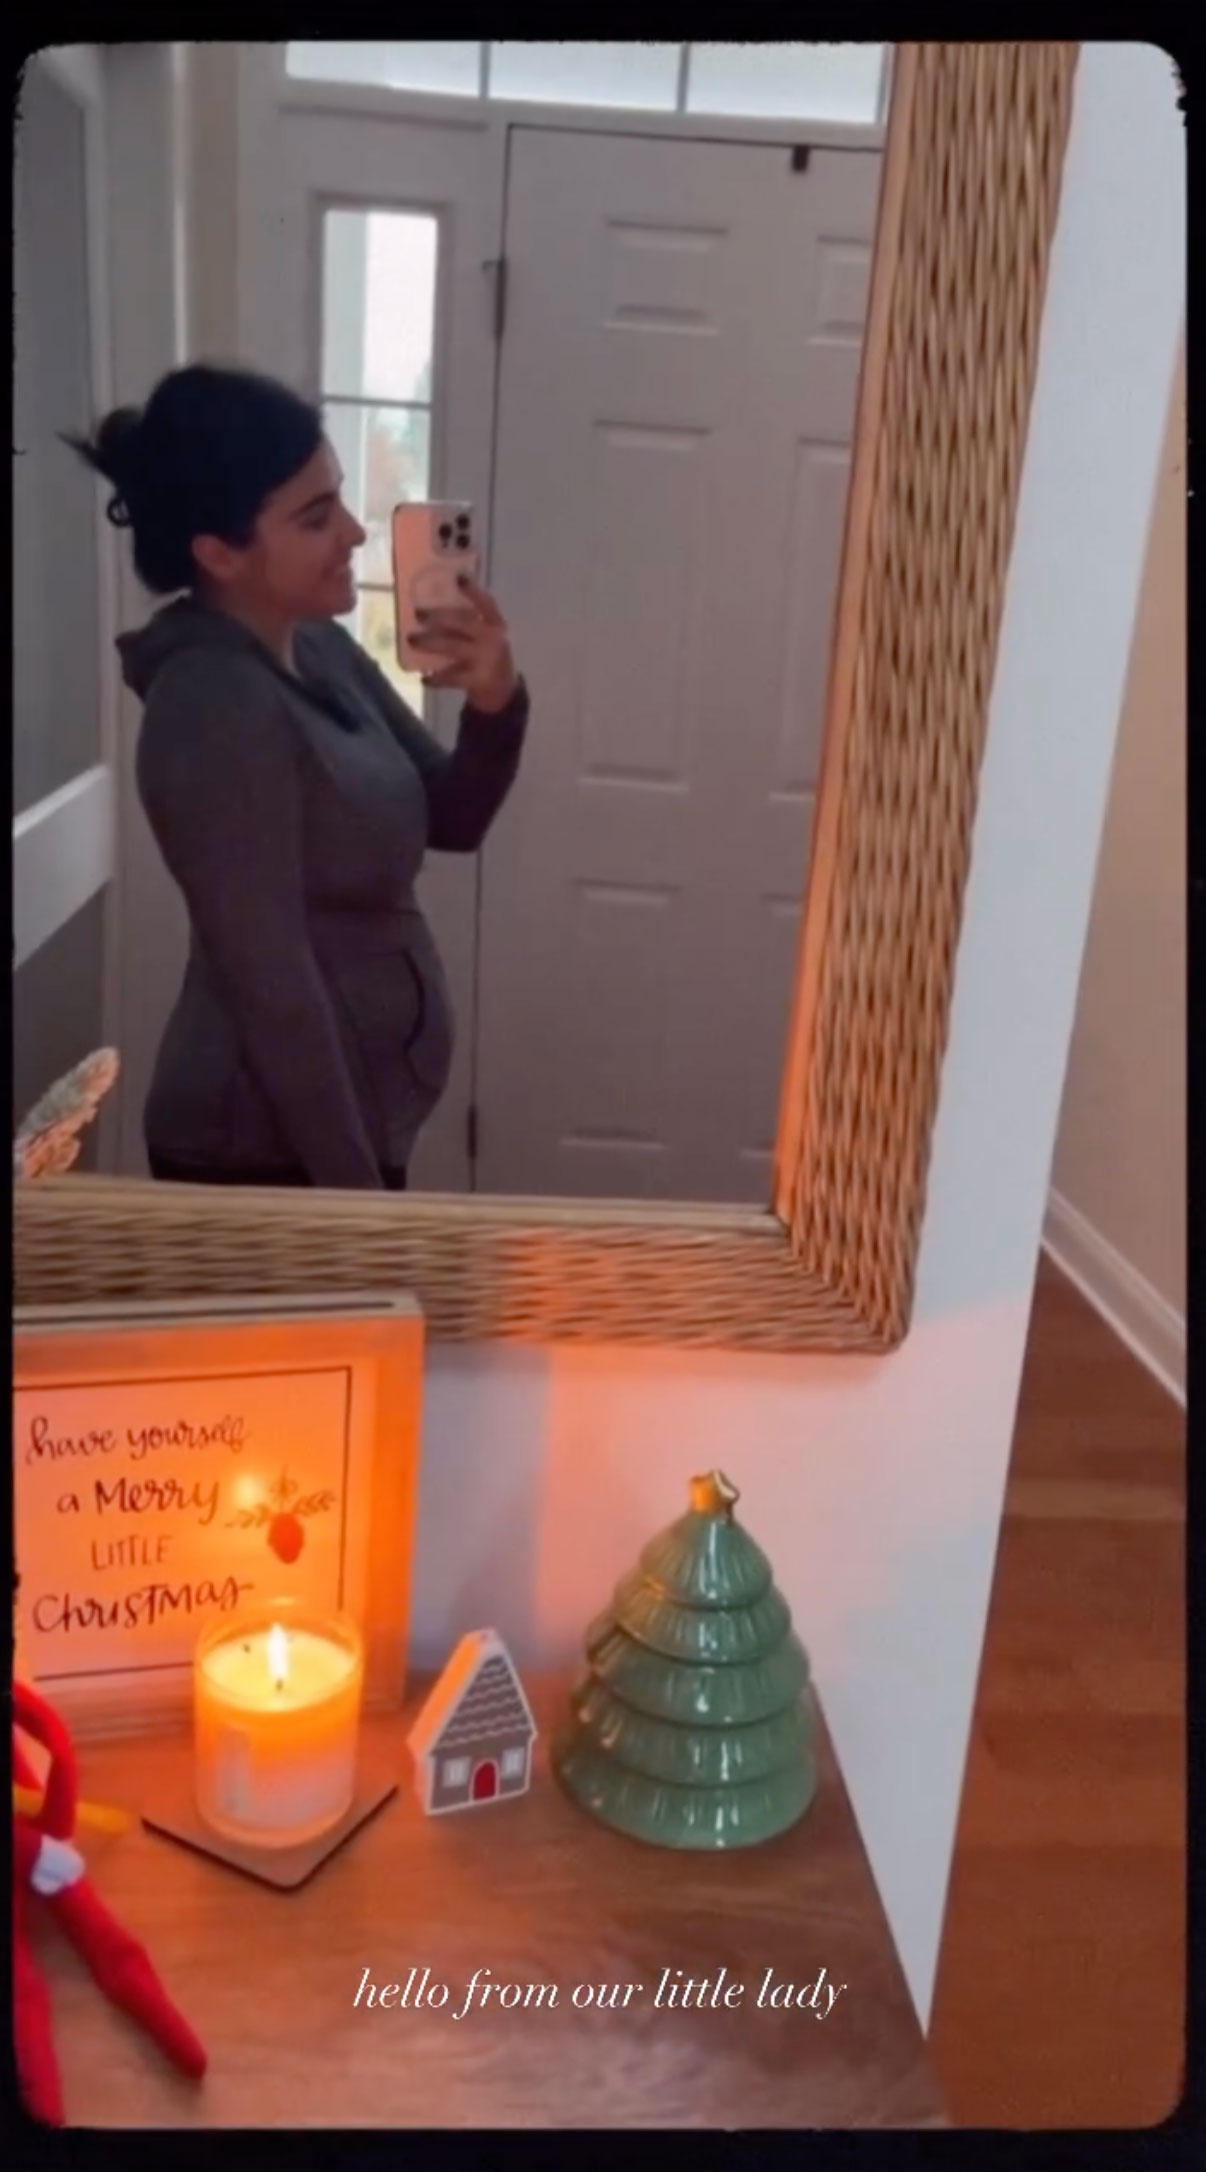 Lauren Comeau showed off her baby bump in a mirror selfie